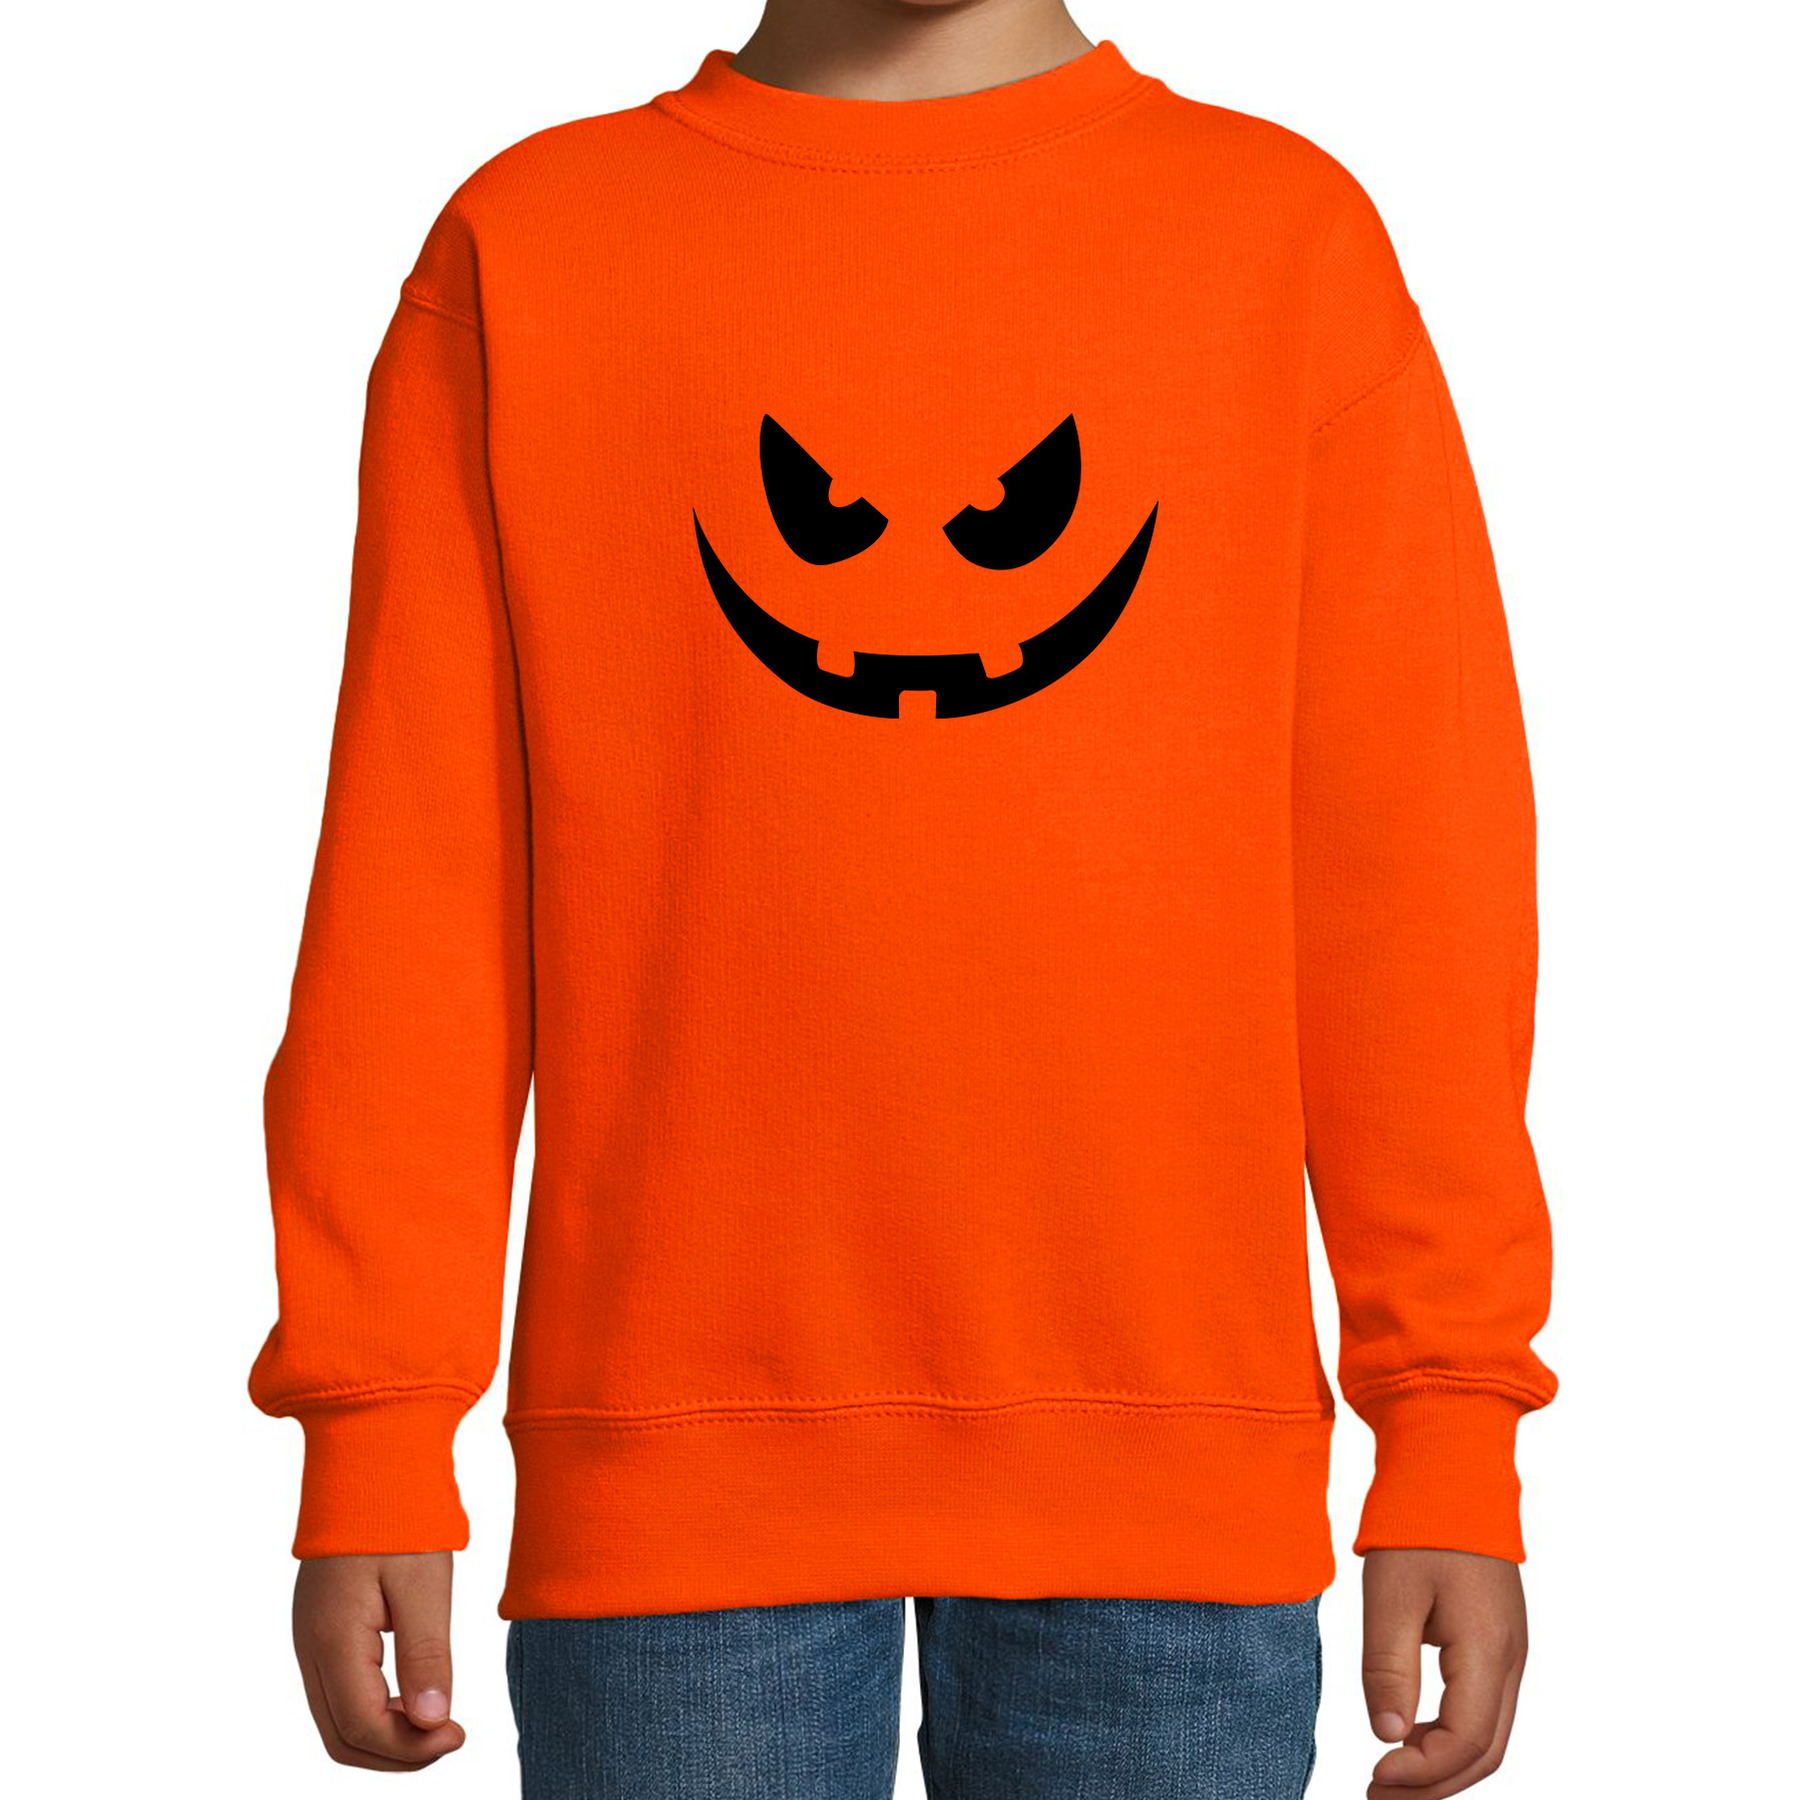 Pompoen gezicht horror trui oranje voor kinderen verkleed sweater-kostuum